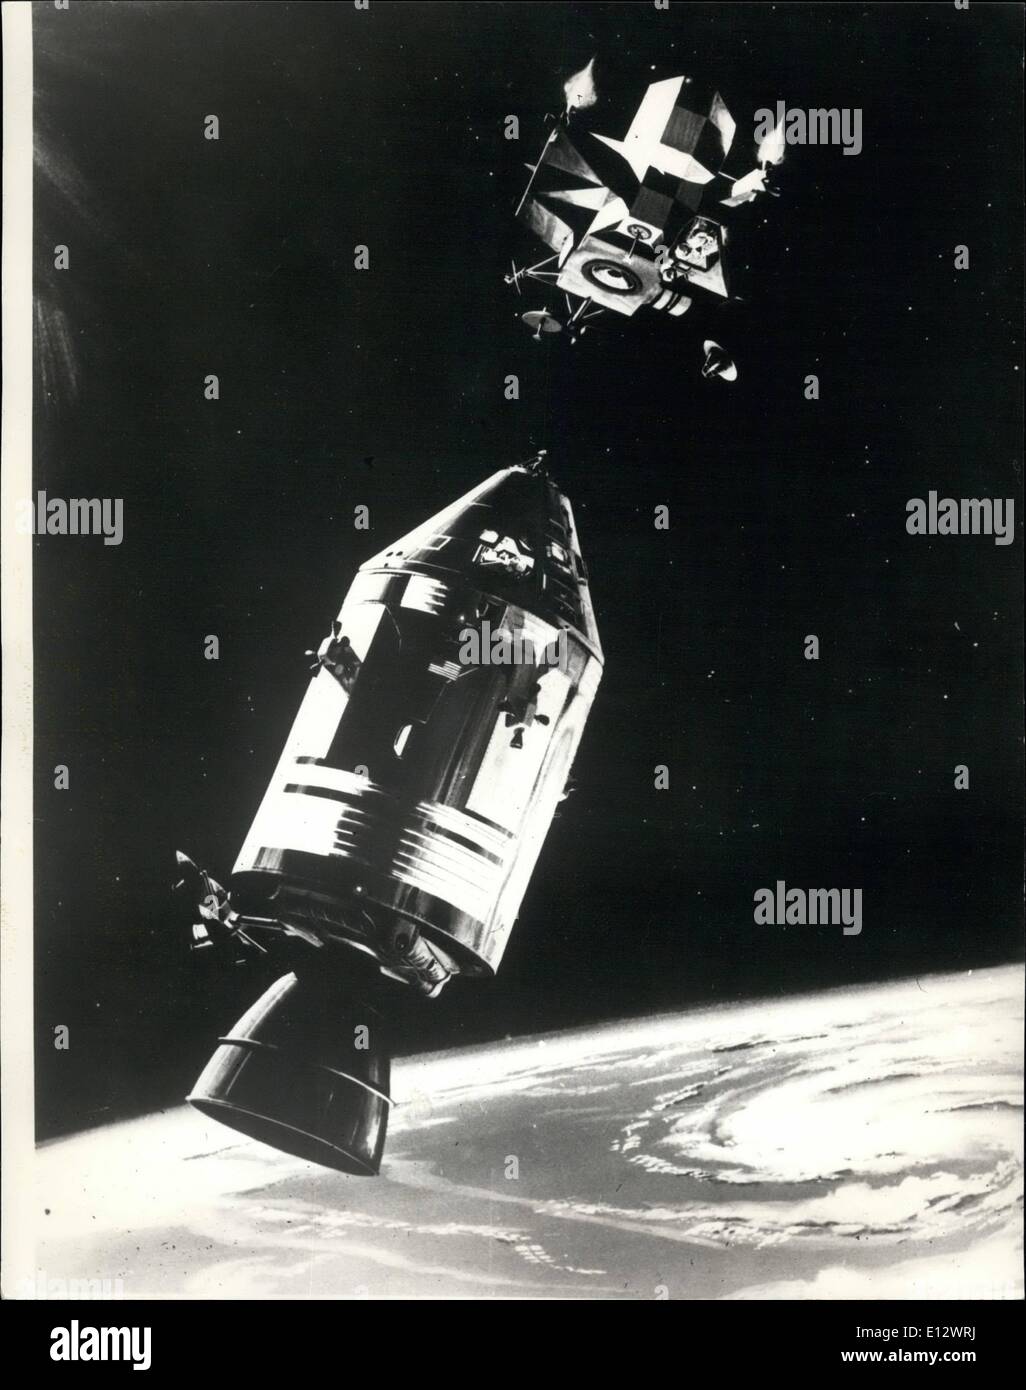 Febbraio 26, 2012 - Apollo equipaggio tutti insieme per andare; l' Apollo 9 volo spaziale guarda tutti i set a prendere il via oggi - i tre astronauti. James Mcdivitt, David Scott e Russell Schweikart visto hanno scosso off loro raffreddori. Mostra fotografica di questo disegno mostra l' Apollo 9 comando di veicoli spaziali e dei moduli di servizio essendo trattenuto in posizione da astronauta David Scott come Modulo Lunare Russel pilota manovre Schweikart la fase di risalita del LM al primo presidiati rendezvous e docking circa 150 miglia sopra la superficie della terra Foto Stock